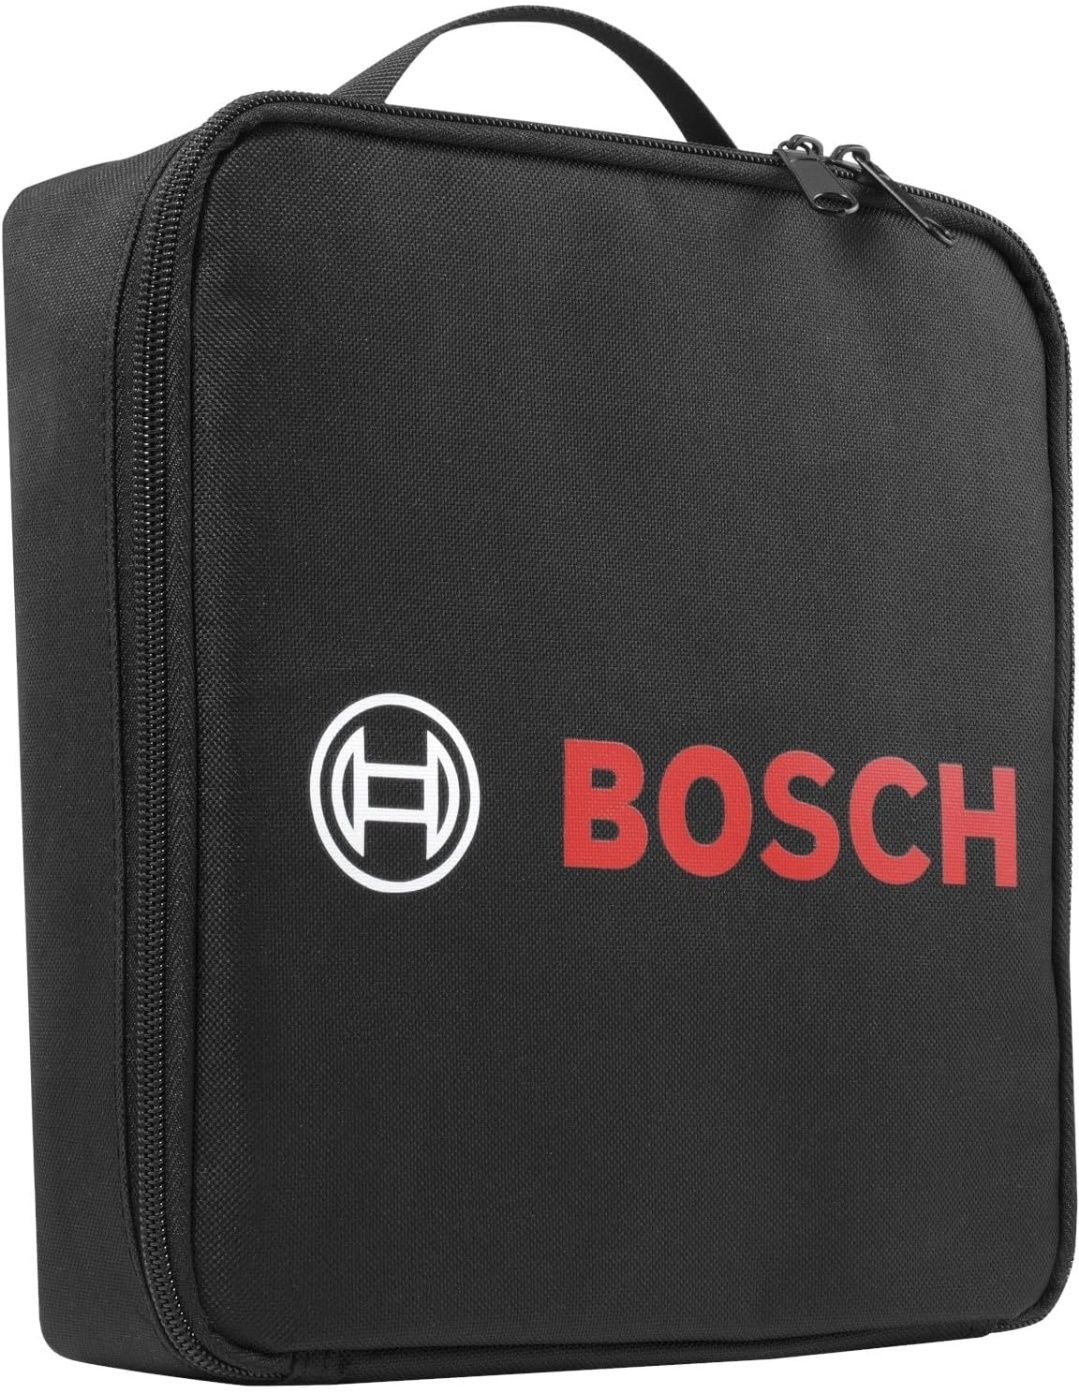 Bosch carregador de bateria C30 para carro, mota ou barco